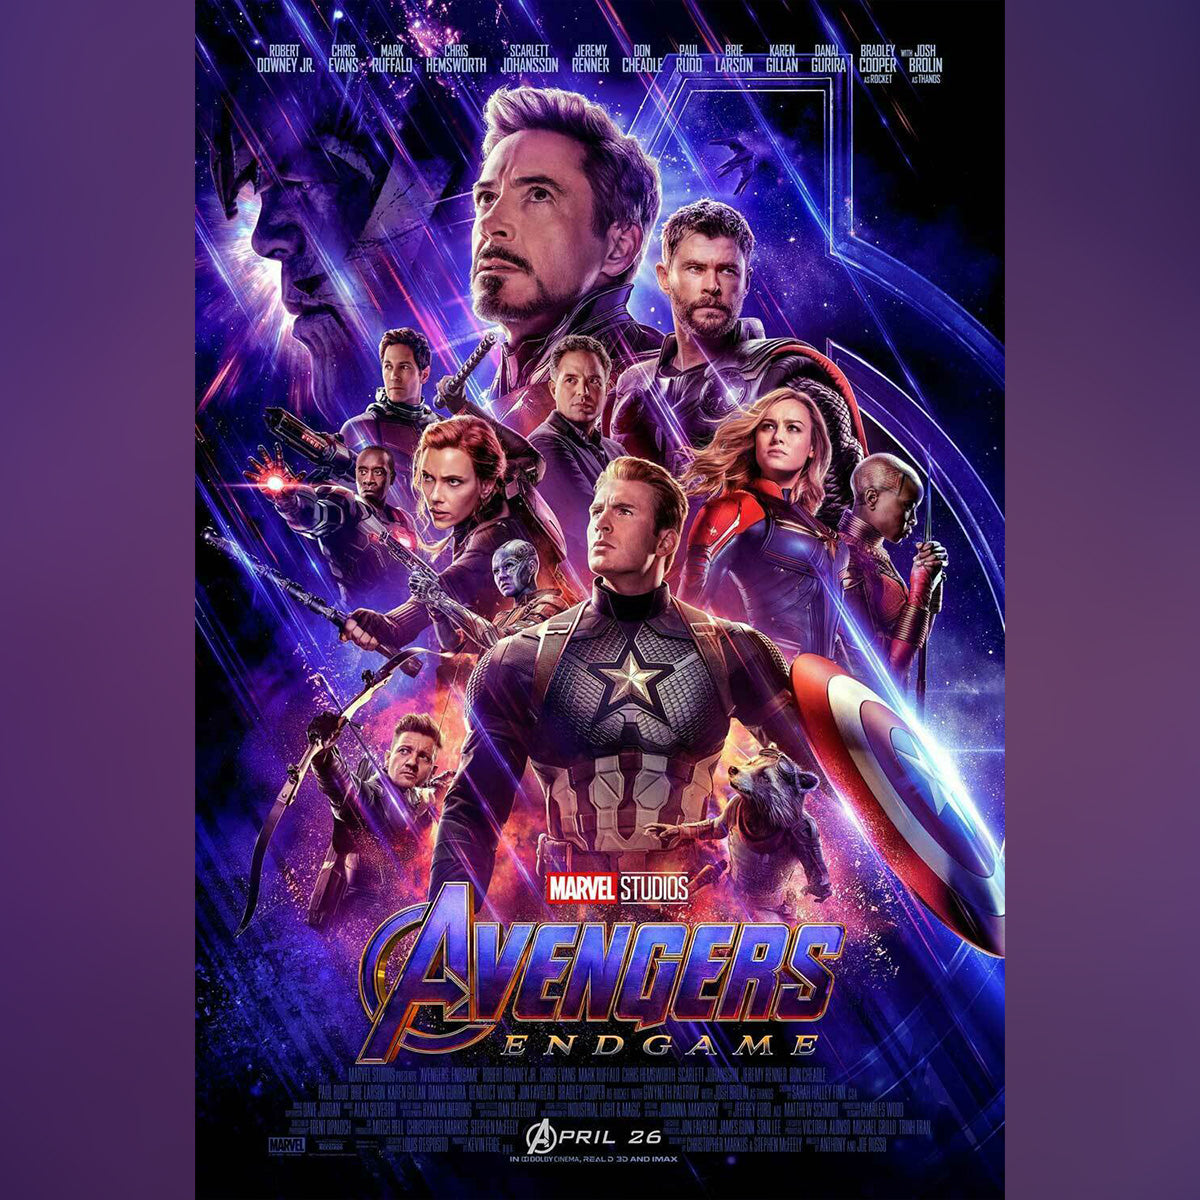 Original Movie Poster of Avengers 4: Endgame (2019)